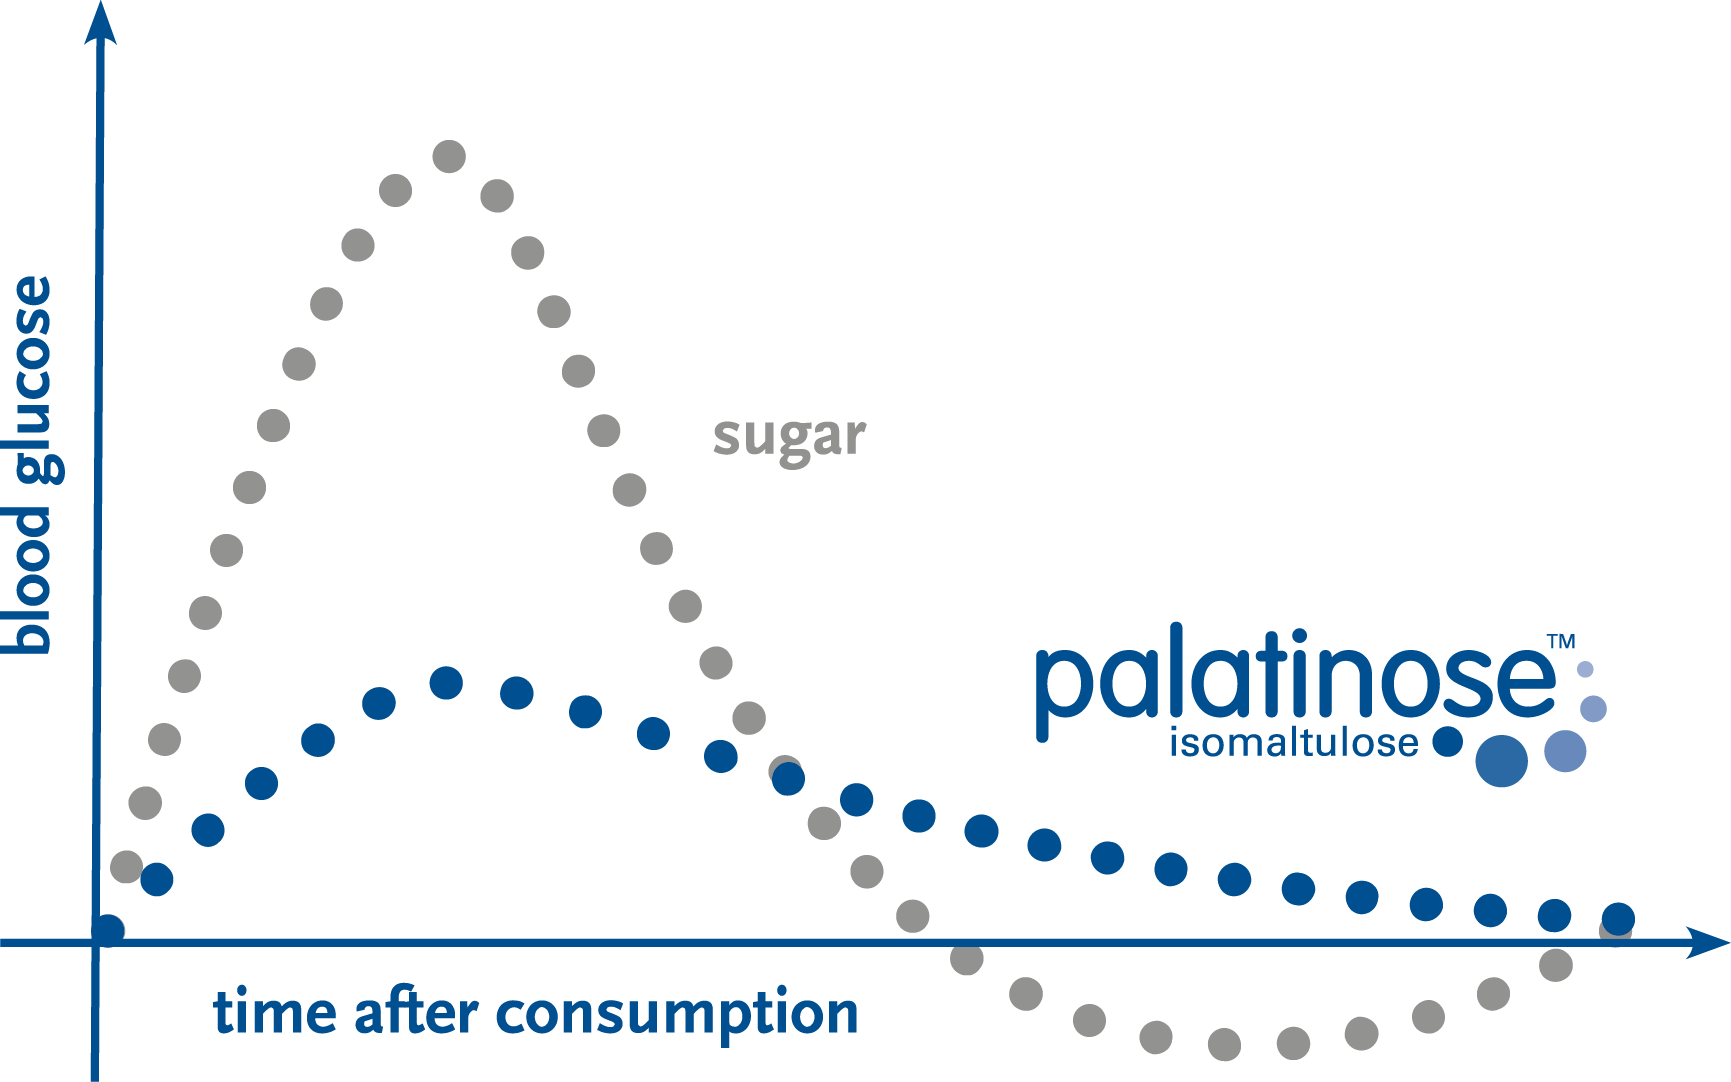 Beneo chart-Palatinose- July 2021.png